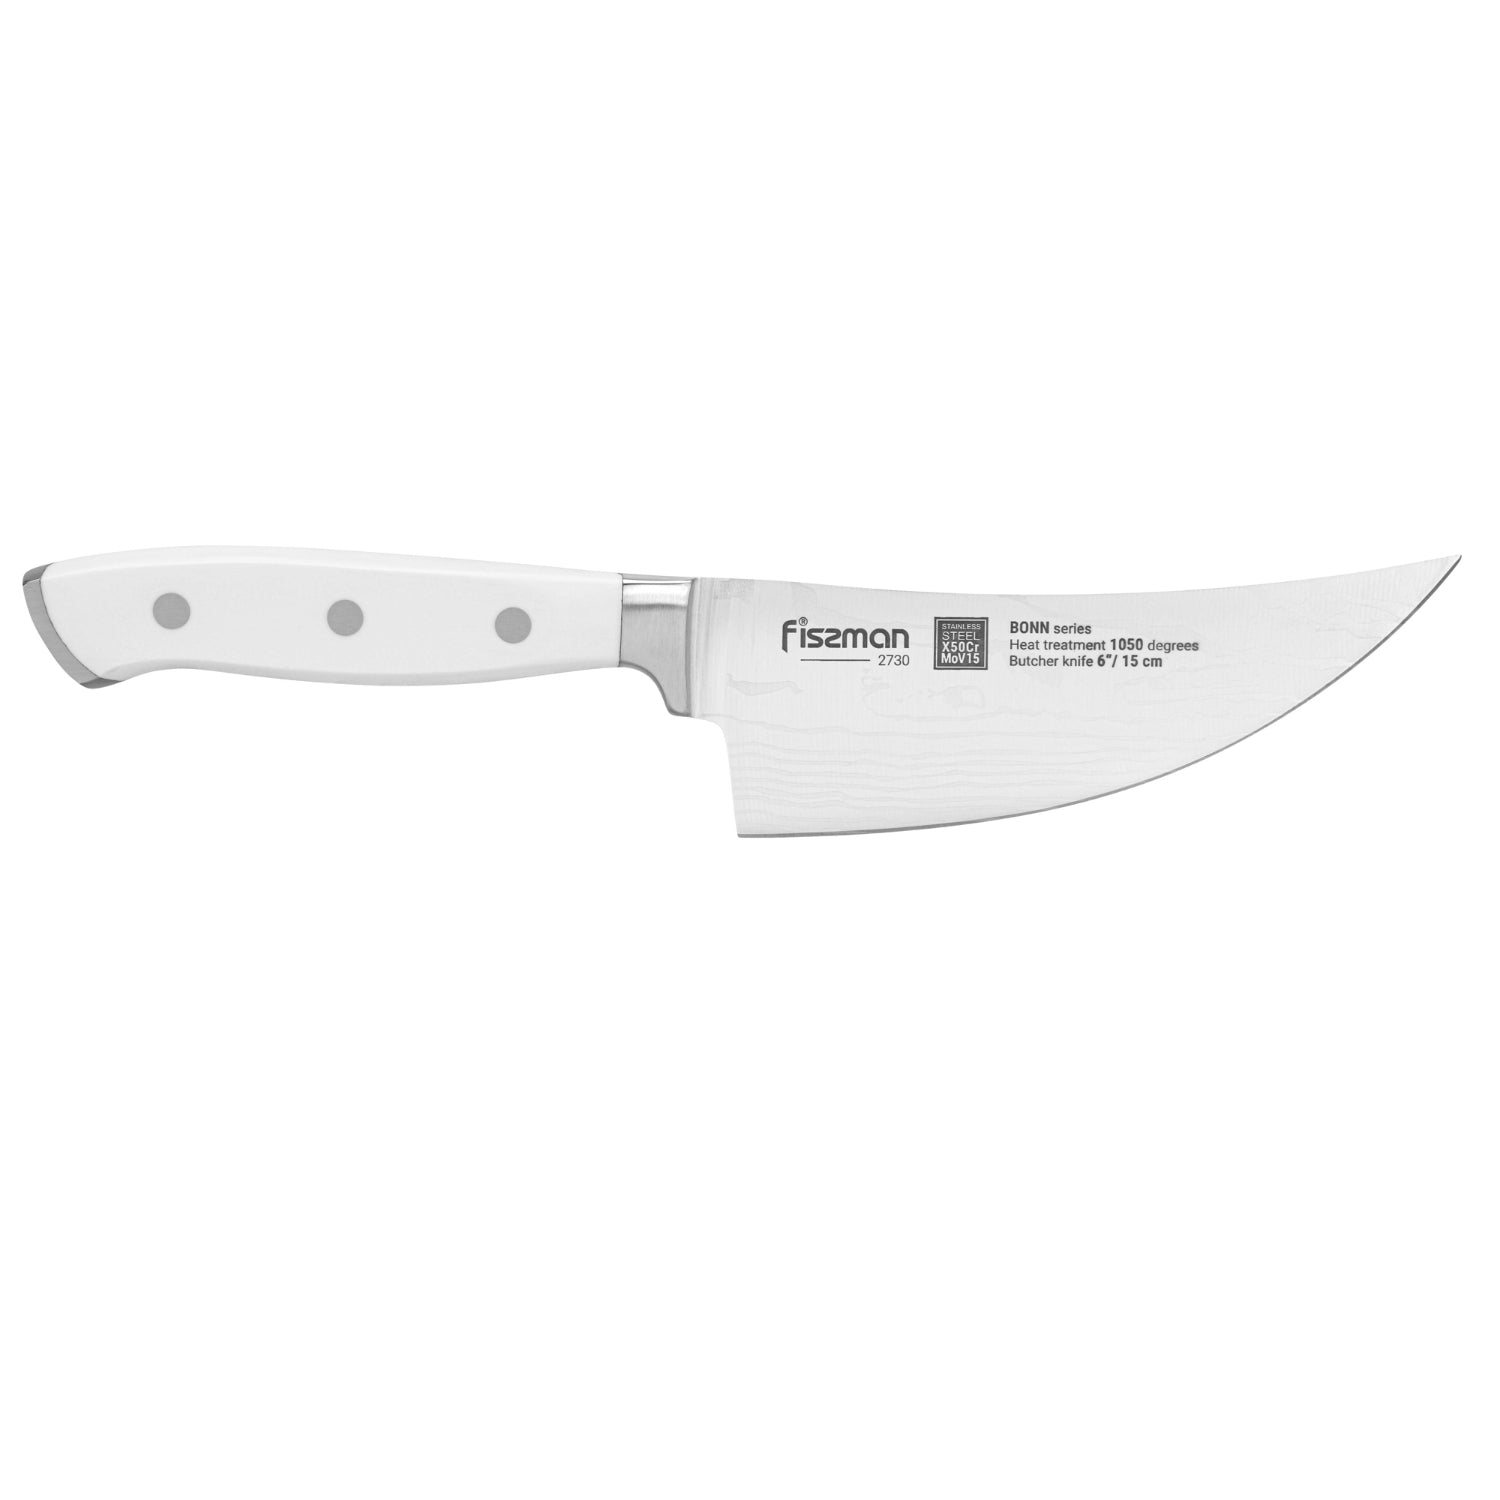 Fissman 6'' Butcher Knife Bonn - X50CrMoV15 steel